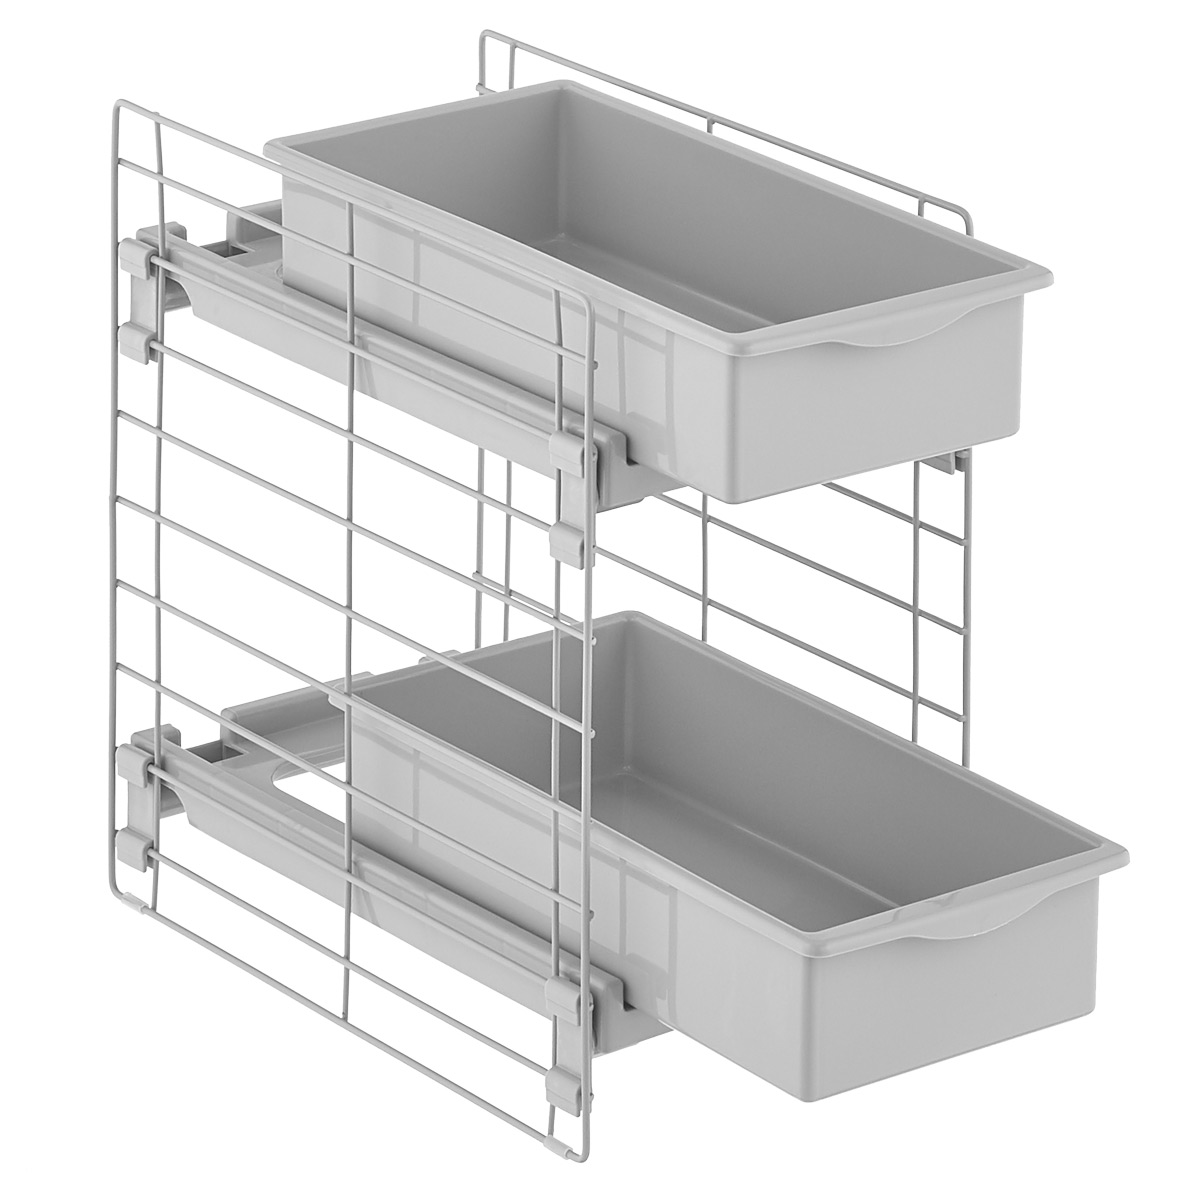 Fleming Supply 12-in-1 Adjustable Under Sink Storage Shelf - White